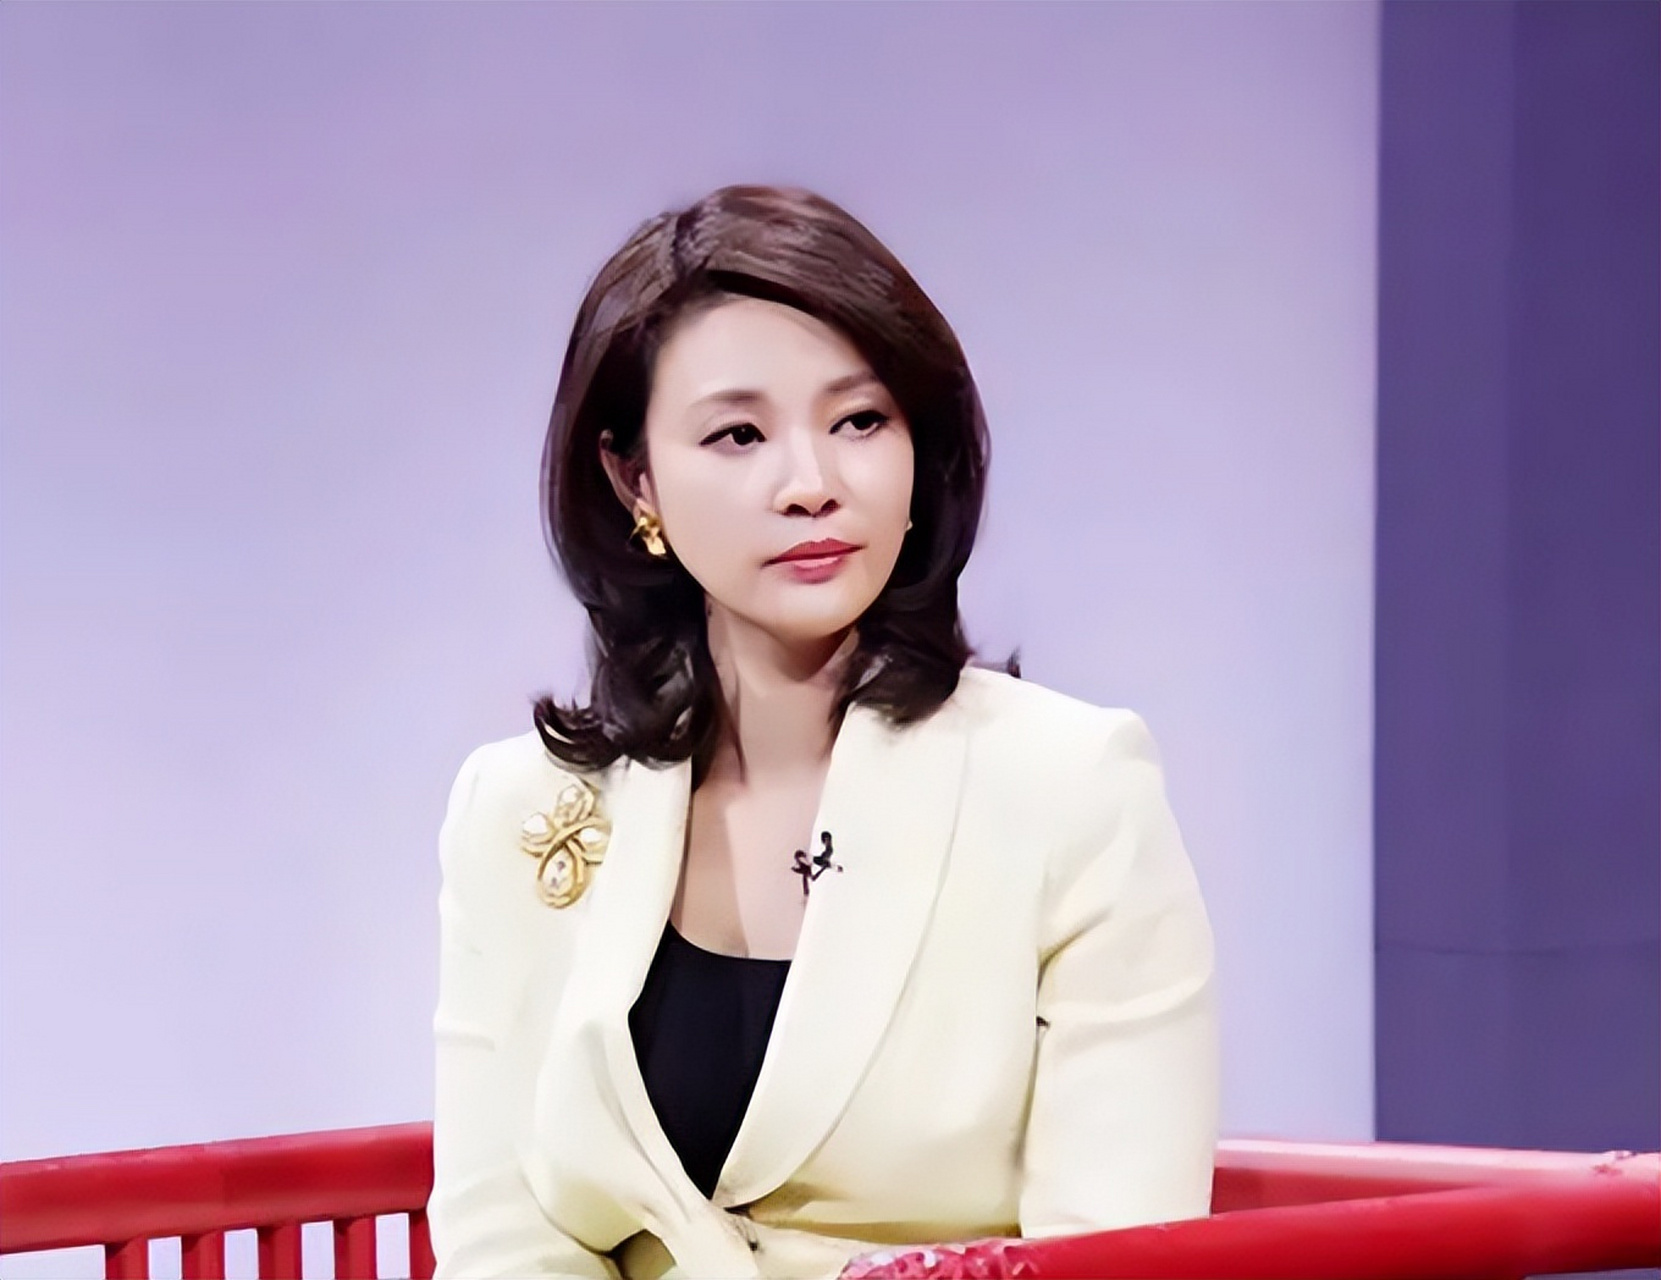 央视明星刘芳菲:美貌与智慧并存!她勇敢追梦,直面挑战